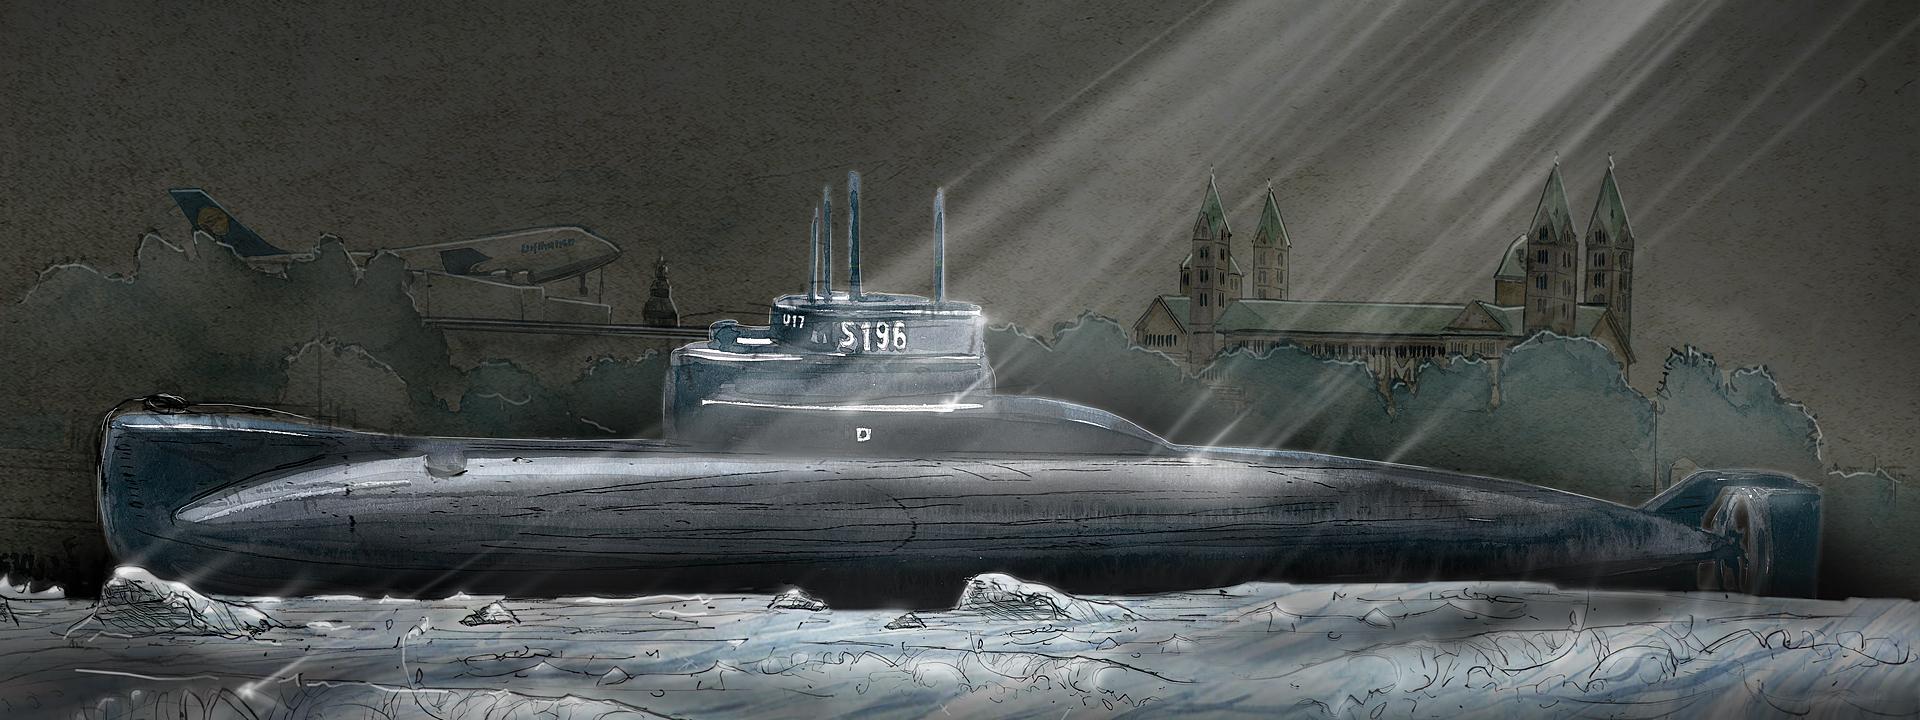 Ein U-Boot rollt nach Sinsheim: Technik Museen bereiten sich vor